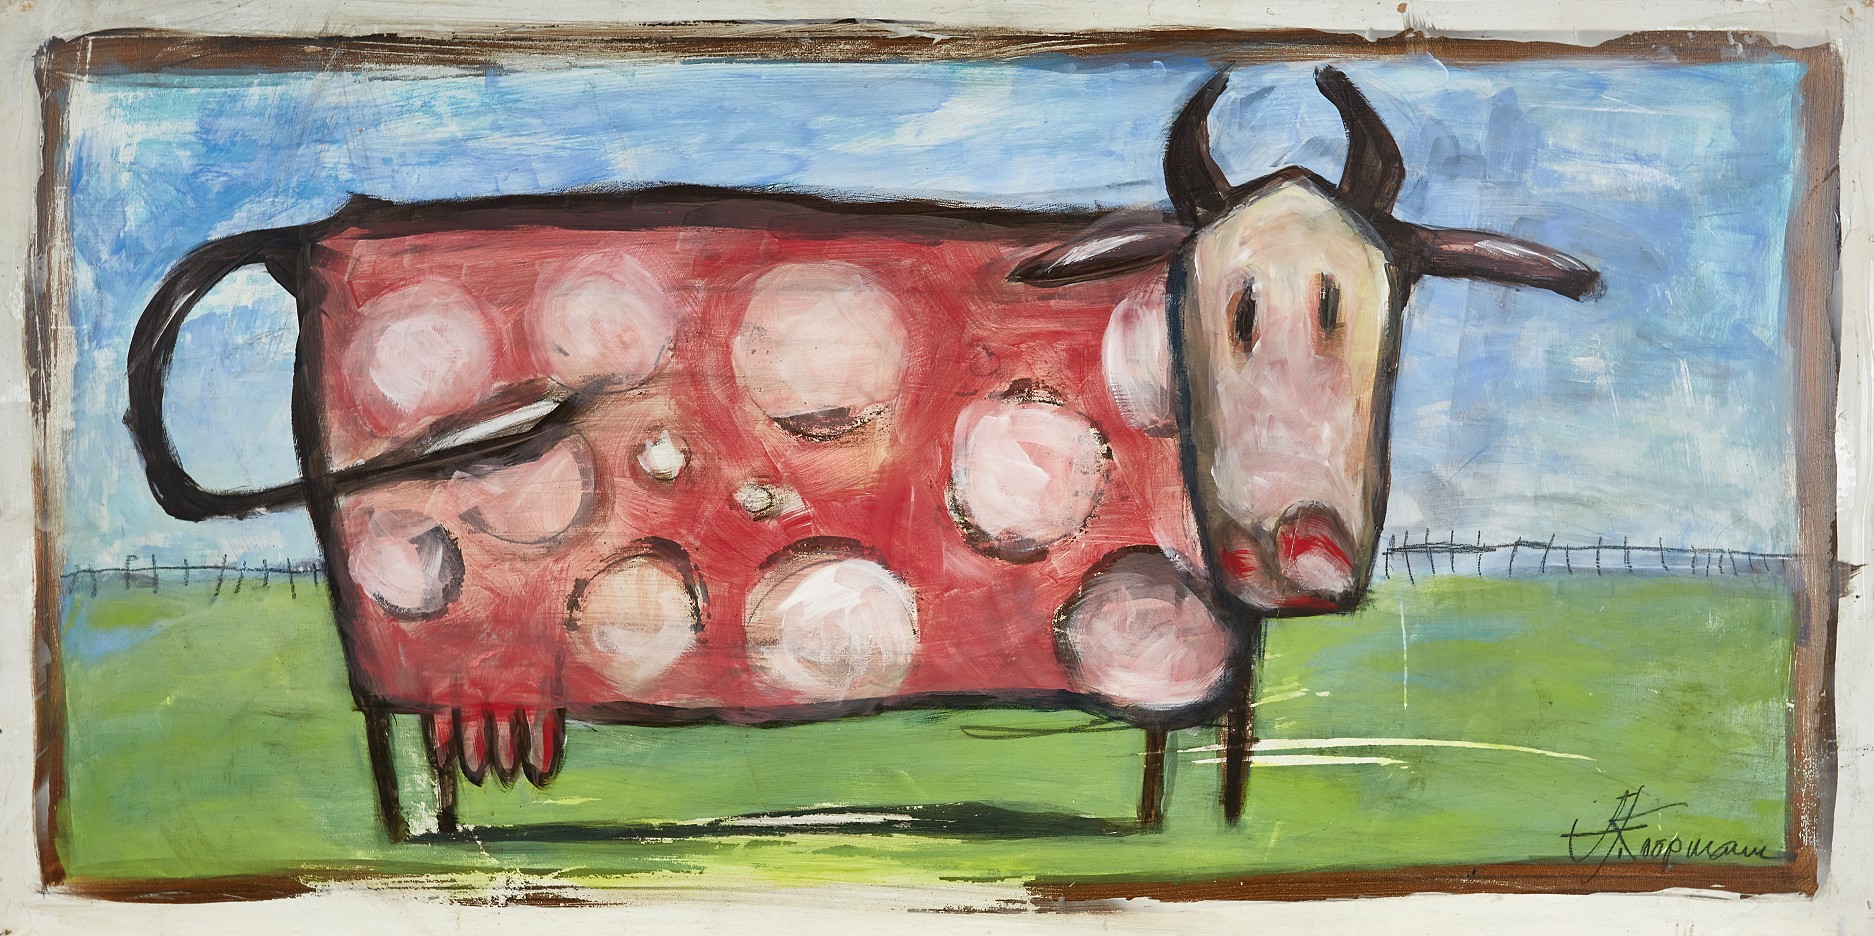 Kuh auf Weide